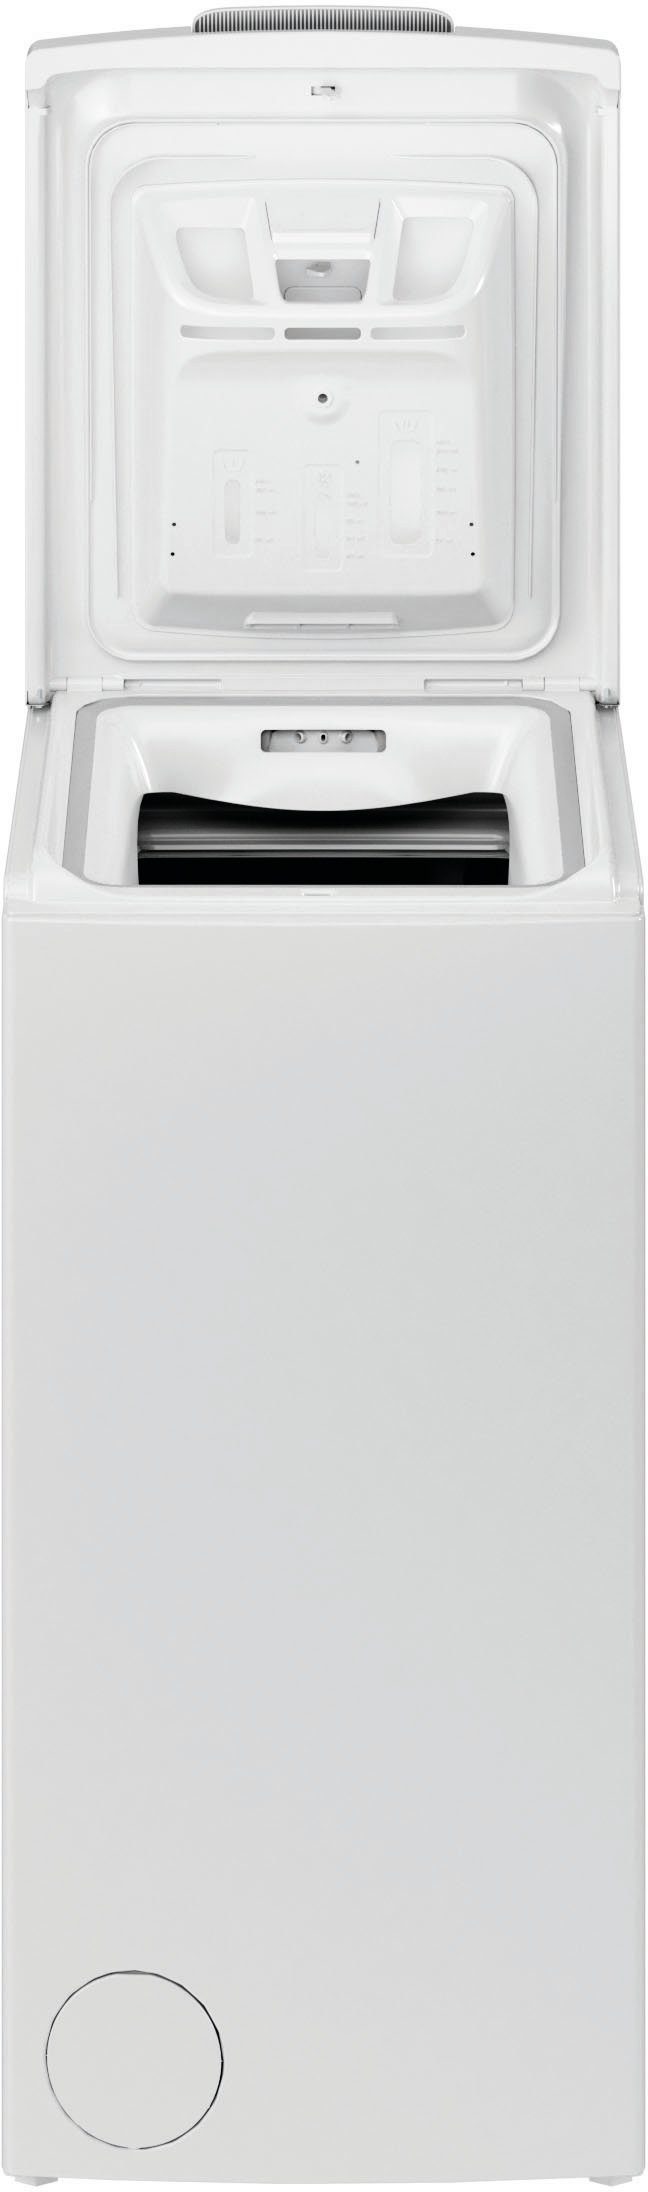 Privileg Waschmaschine Toplader C6512P U/min kg, PWT 1200 N, 6,5